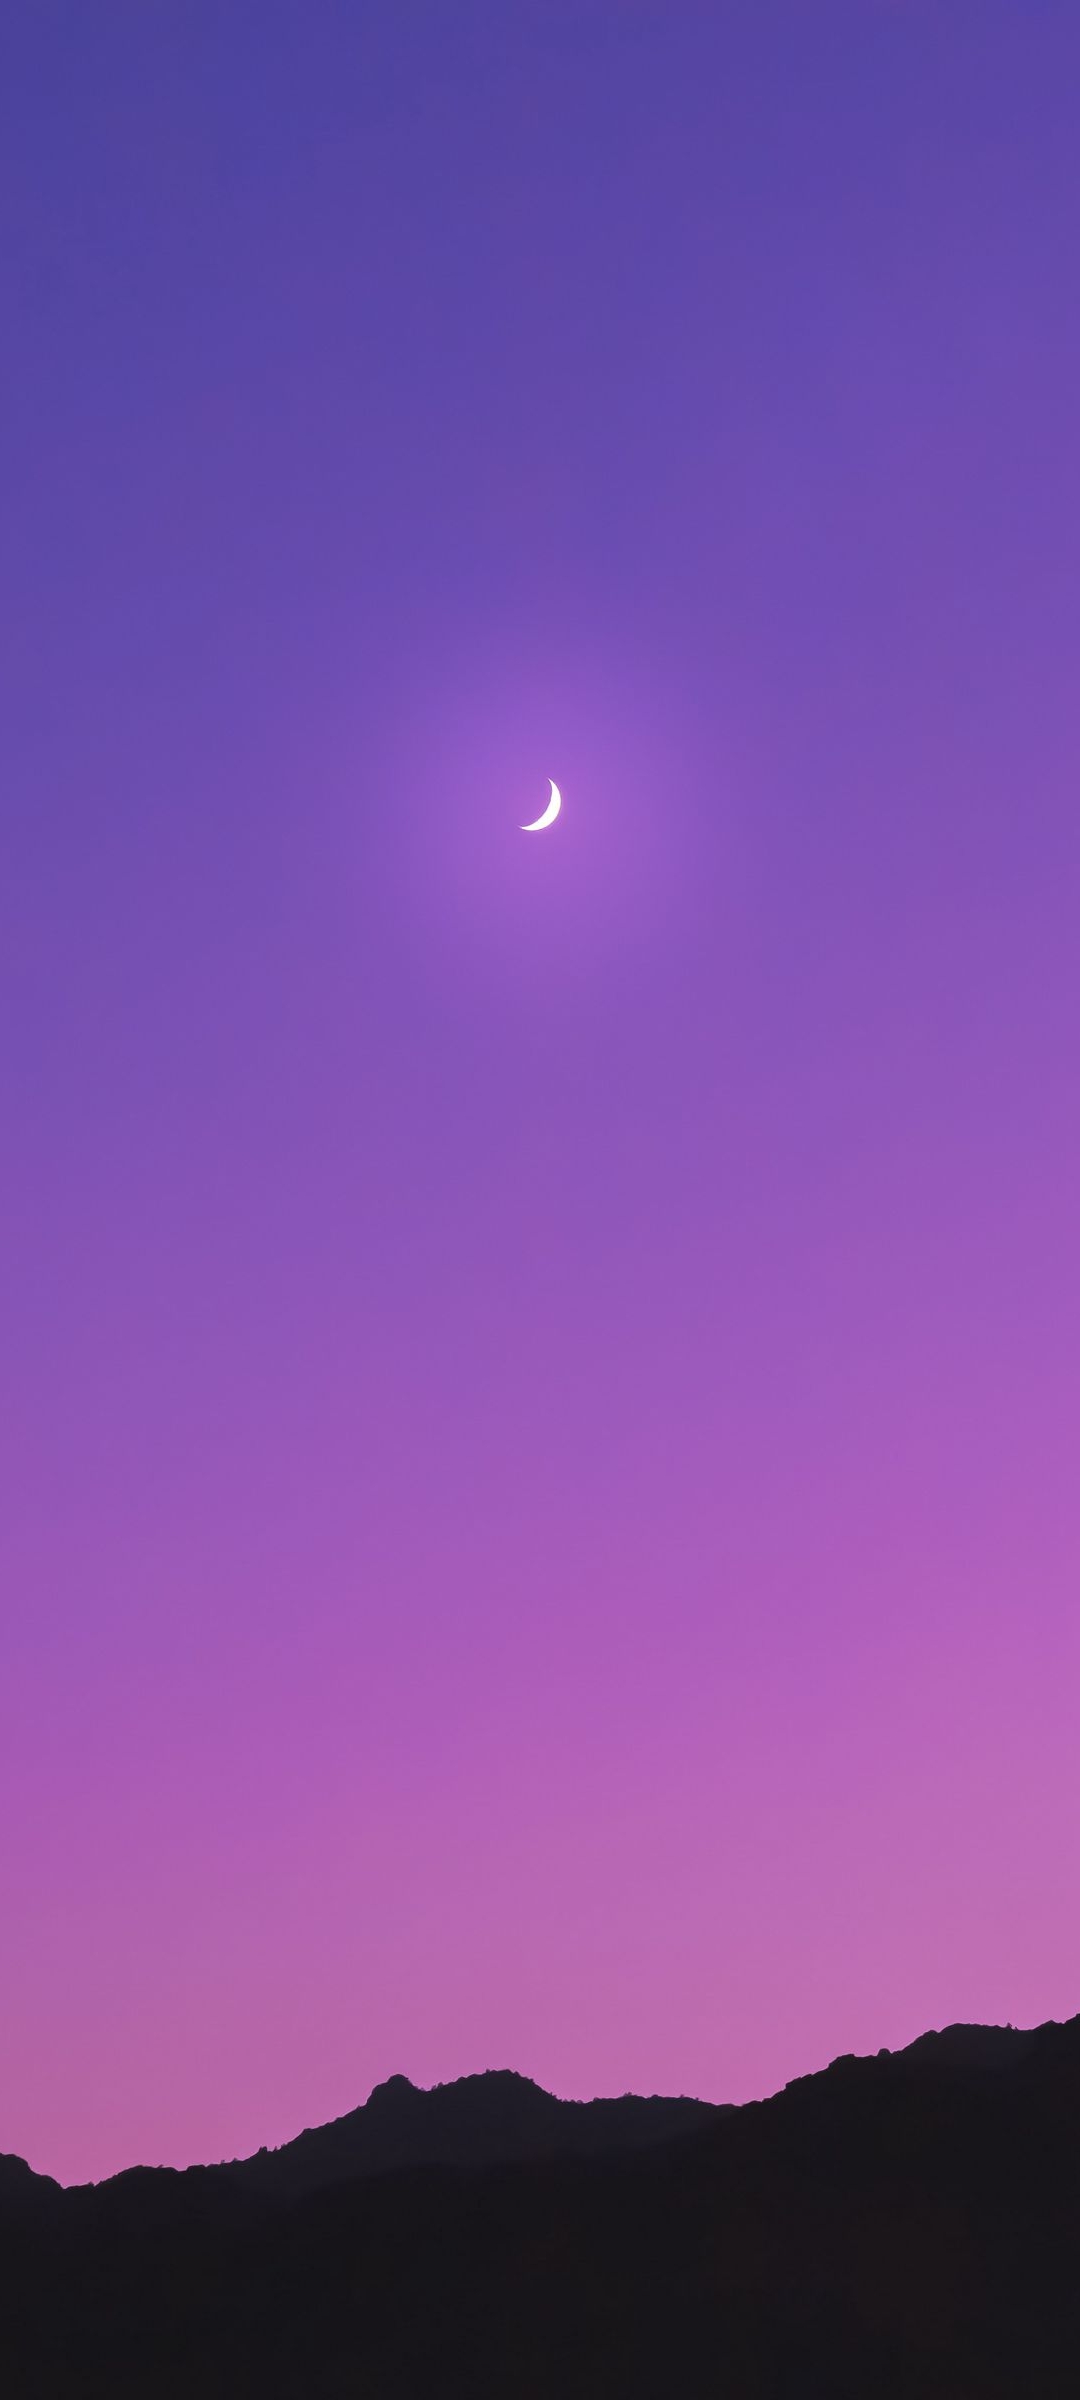 三日月 紫のグラデーションの空 黒い山 Zenfone 7 Pro Androidスマホ壁紙 待ち受け スマラン